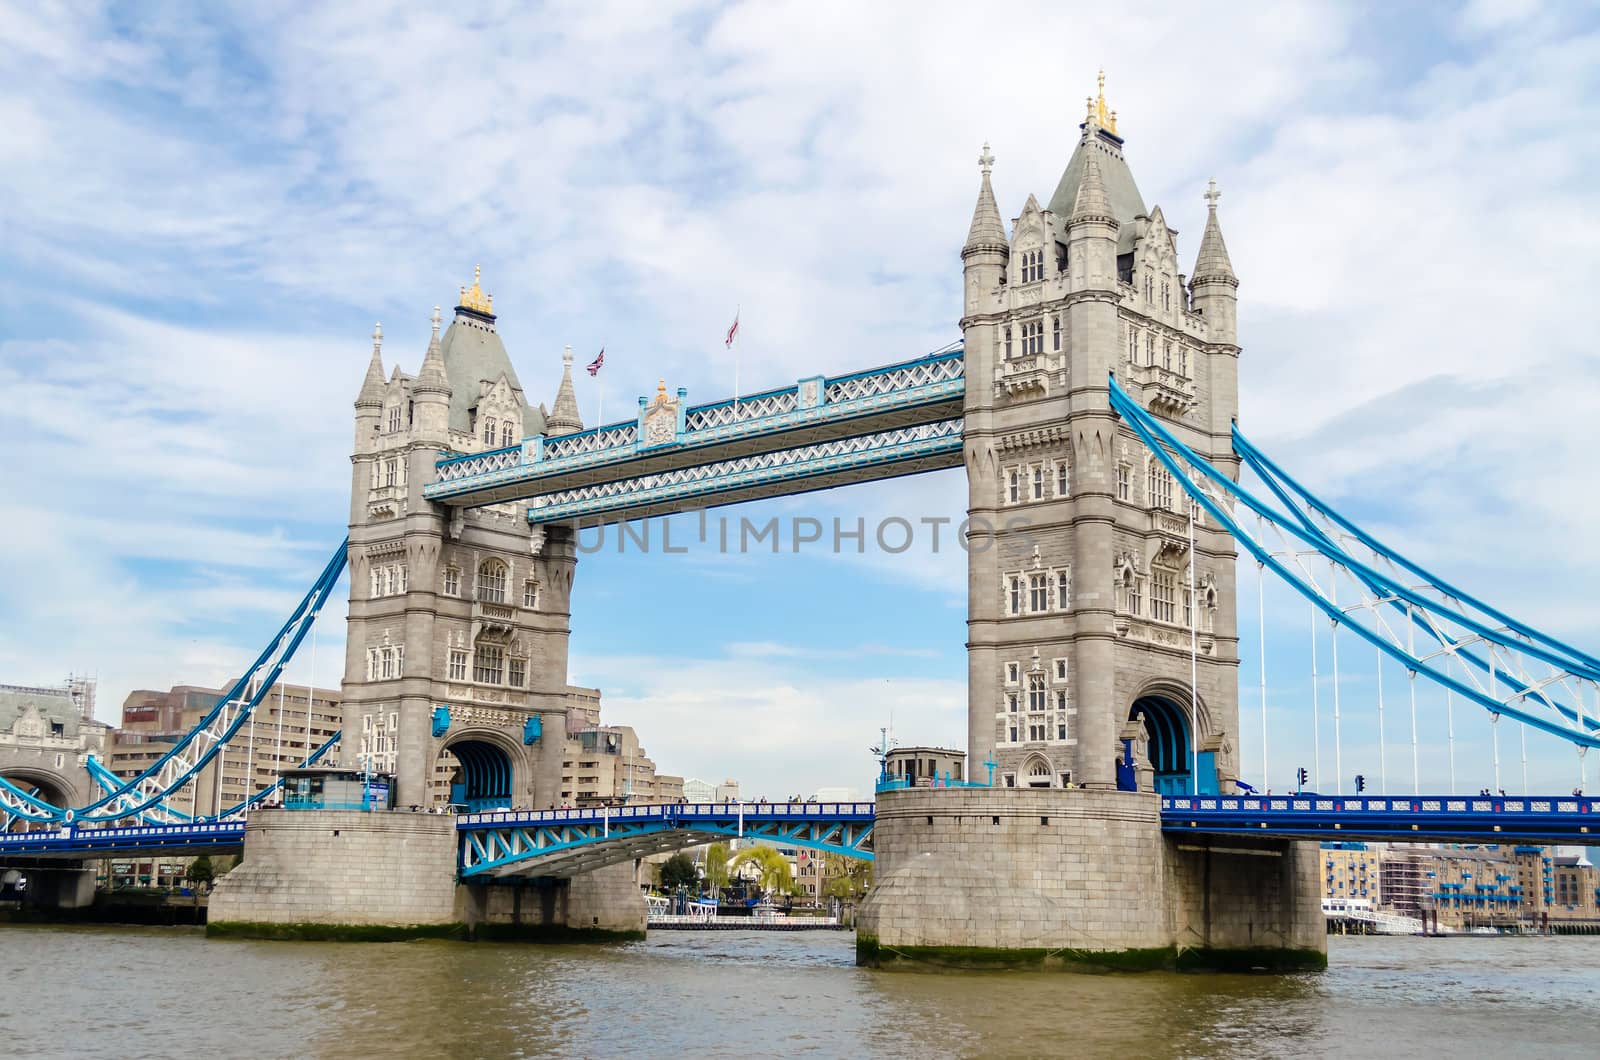 Tower Bridge, London, UK by marcorubino